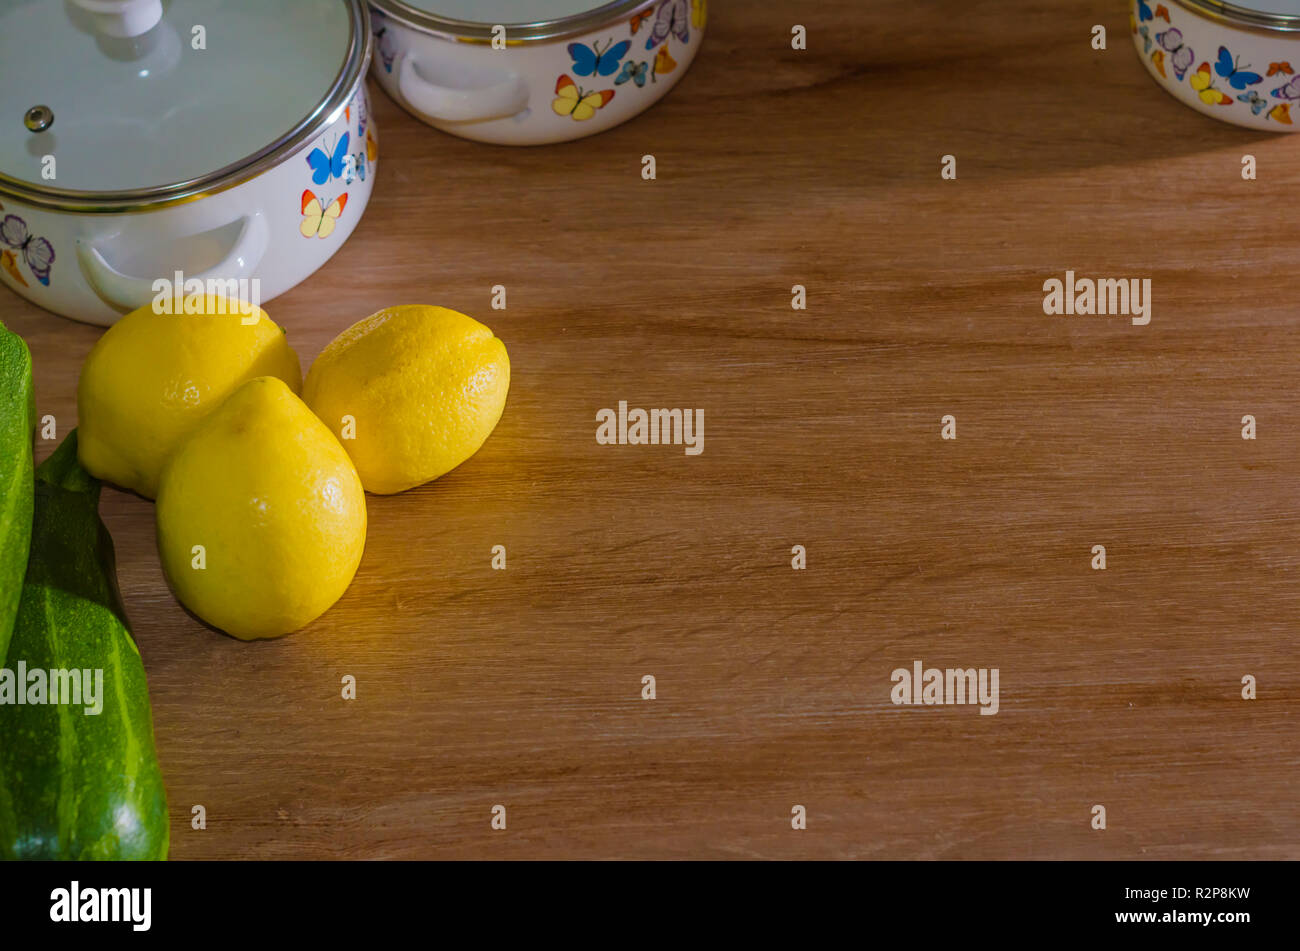 ollas y cacerolas con limones y vegetales en una cocina Stock Photo